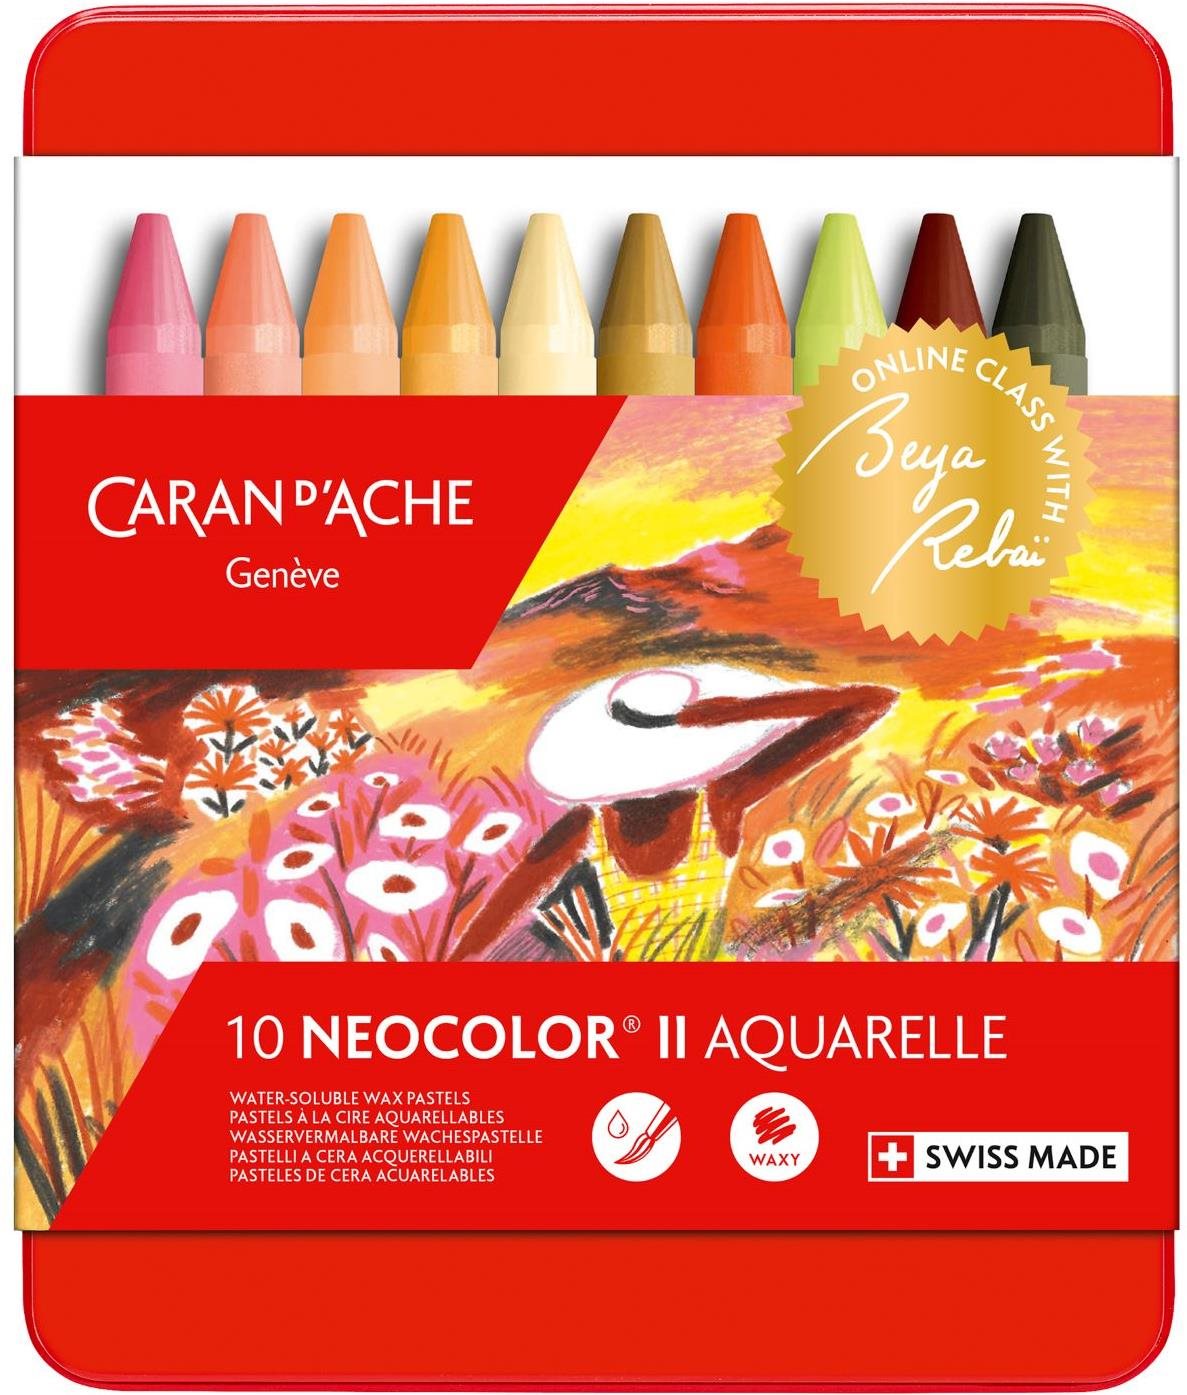 CARAN D'ACHE Neocolor II edice Beya Rebai 10 teplých barev v kovovém boxu